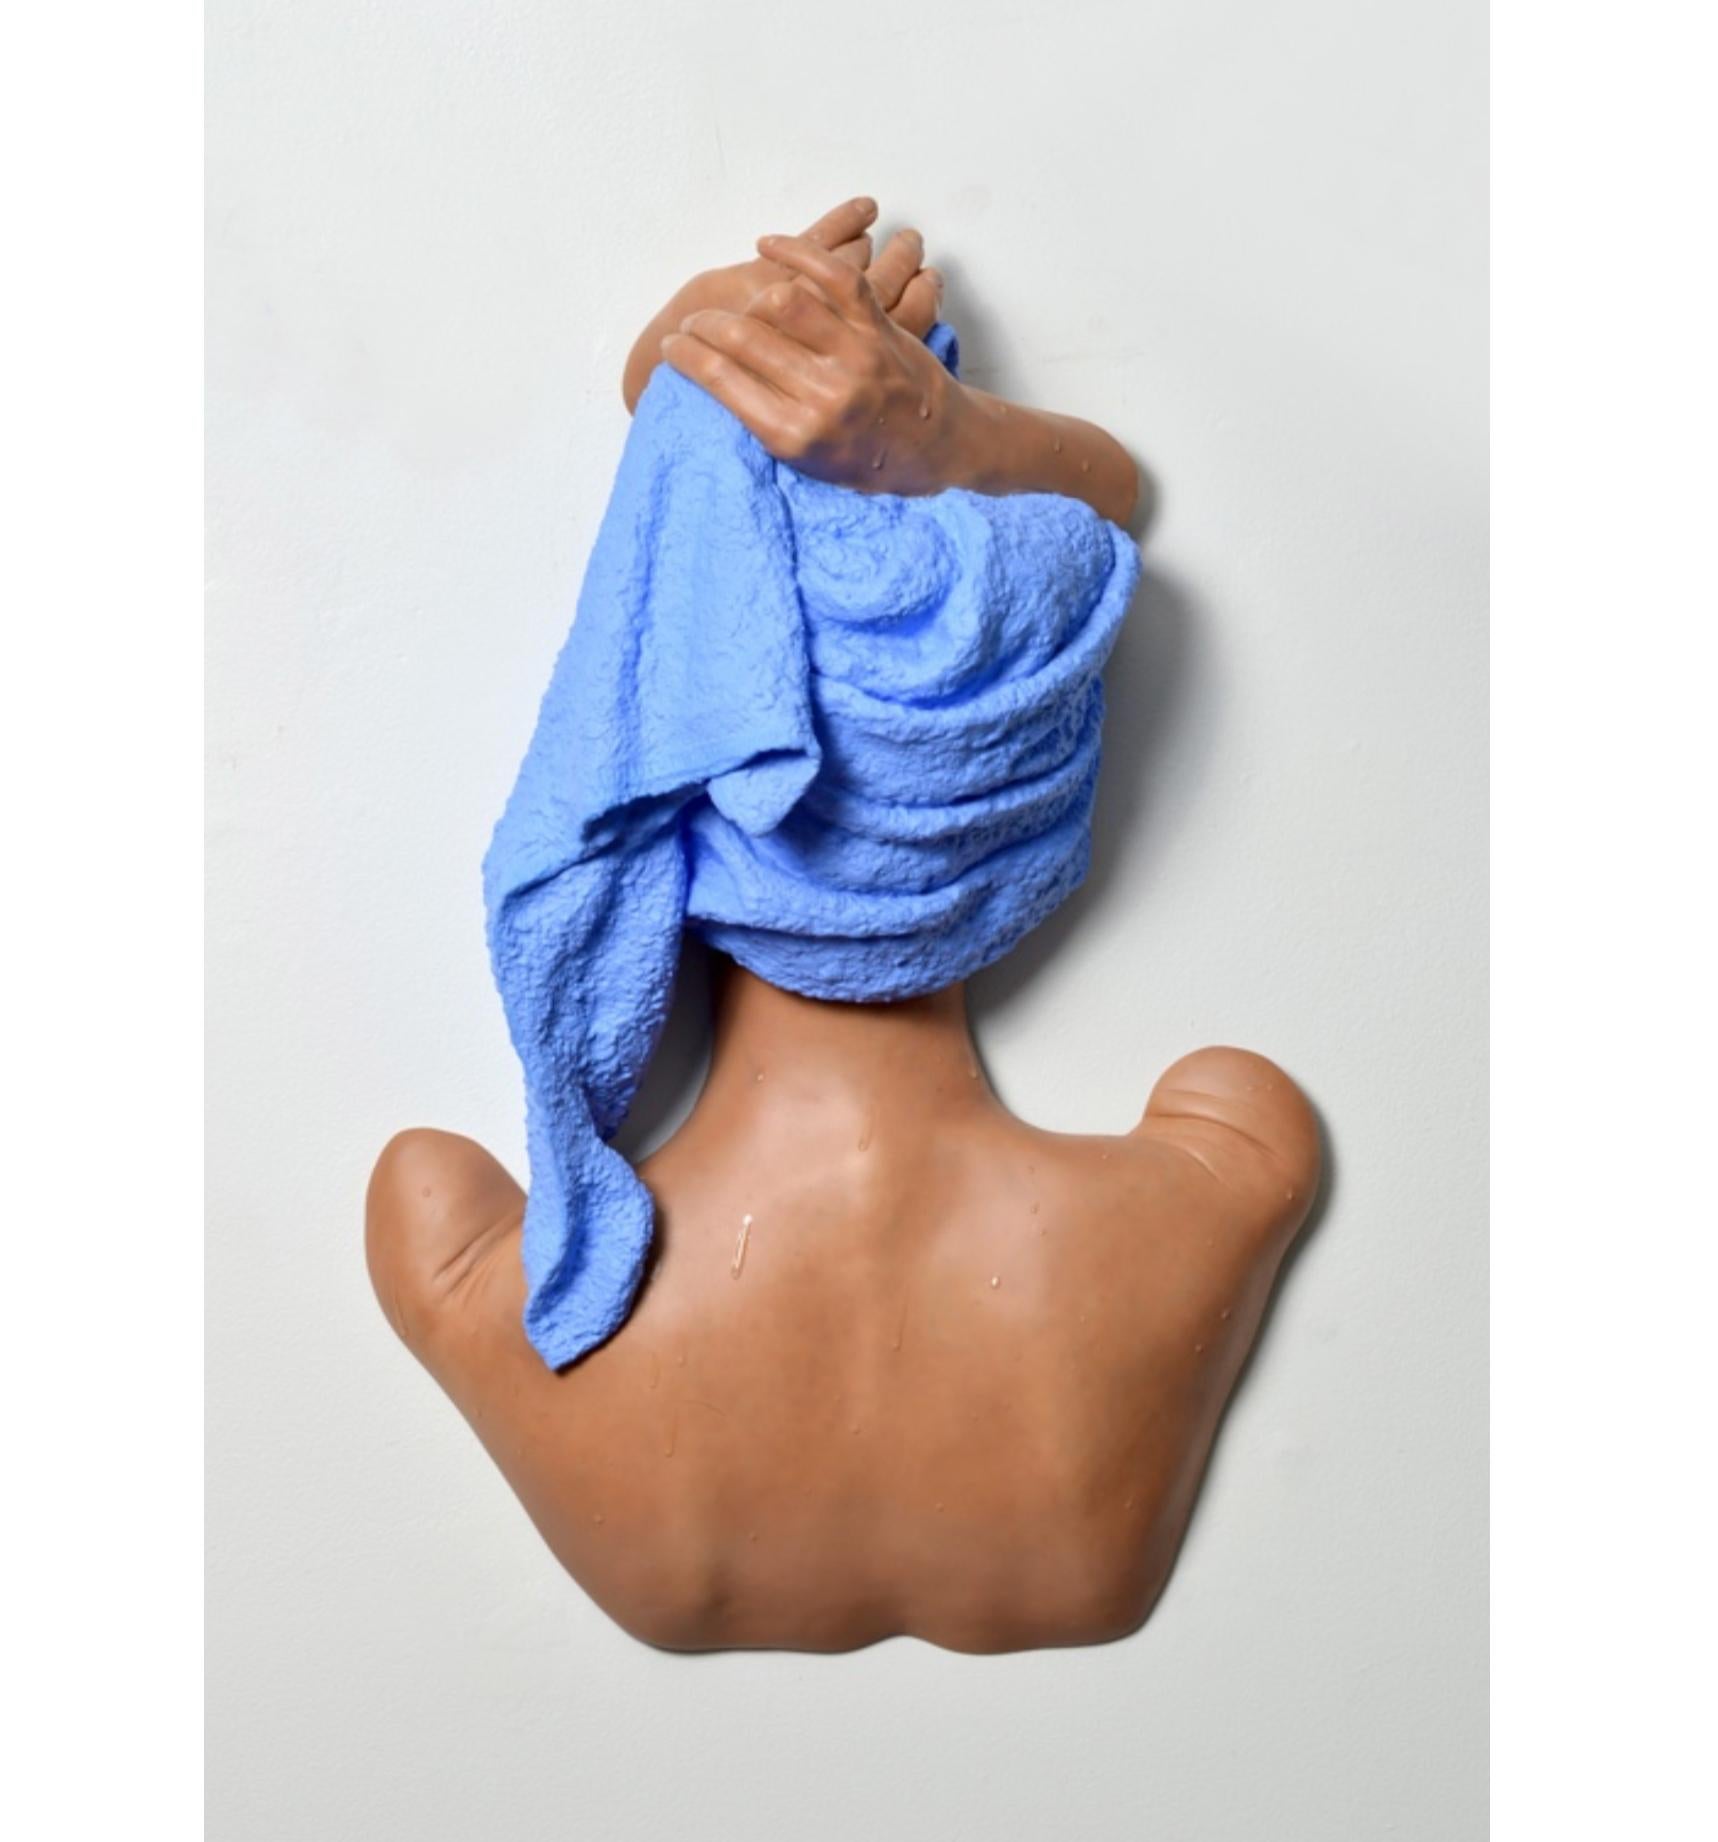 Hände auf dem Handtuch – Sculpture von Carole Feuerman